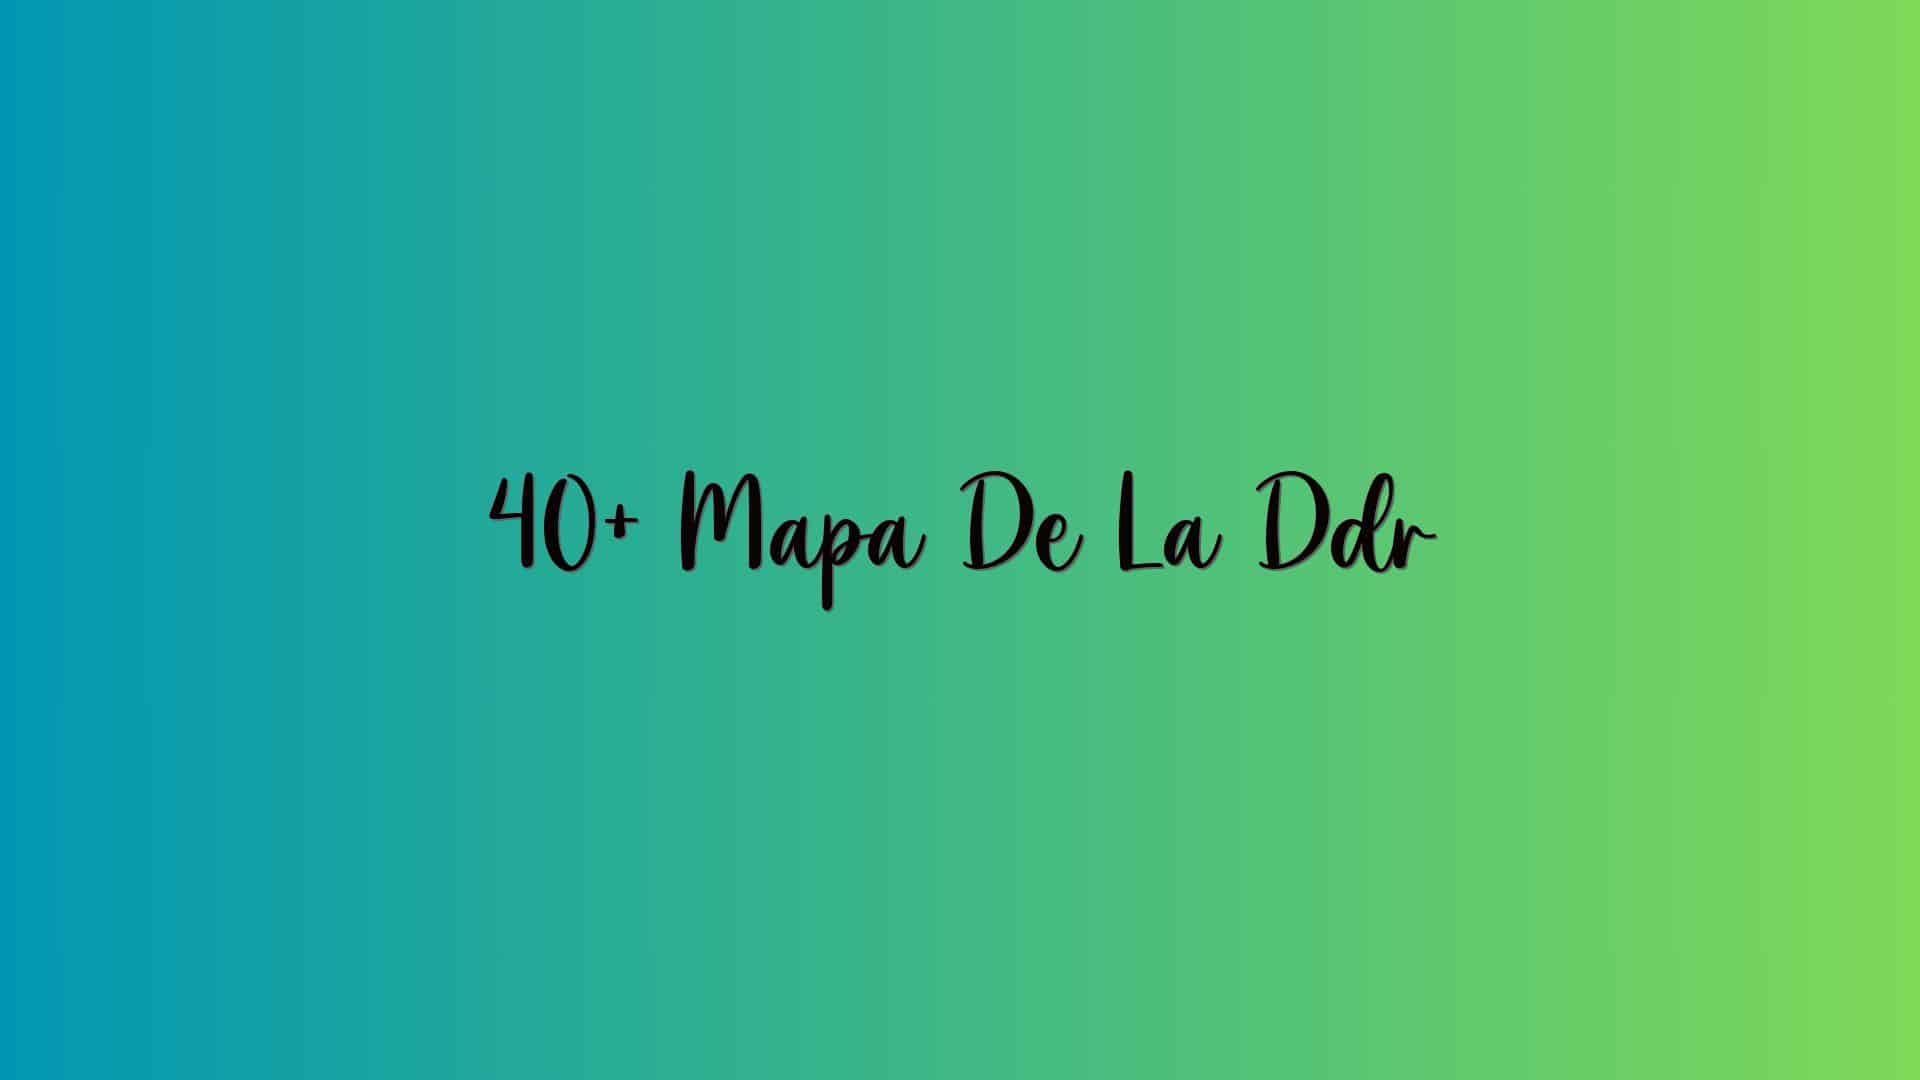 40+ Mapa De La Ddr